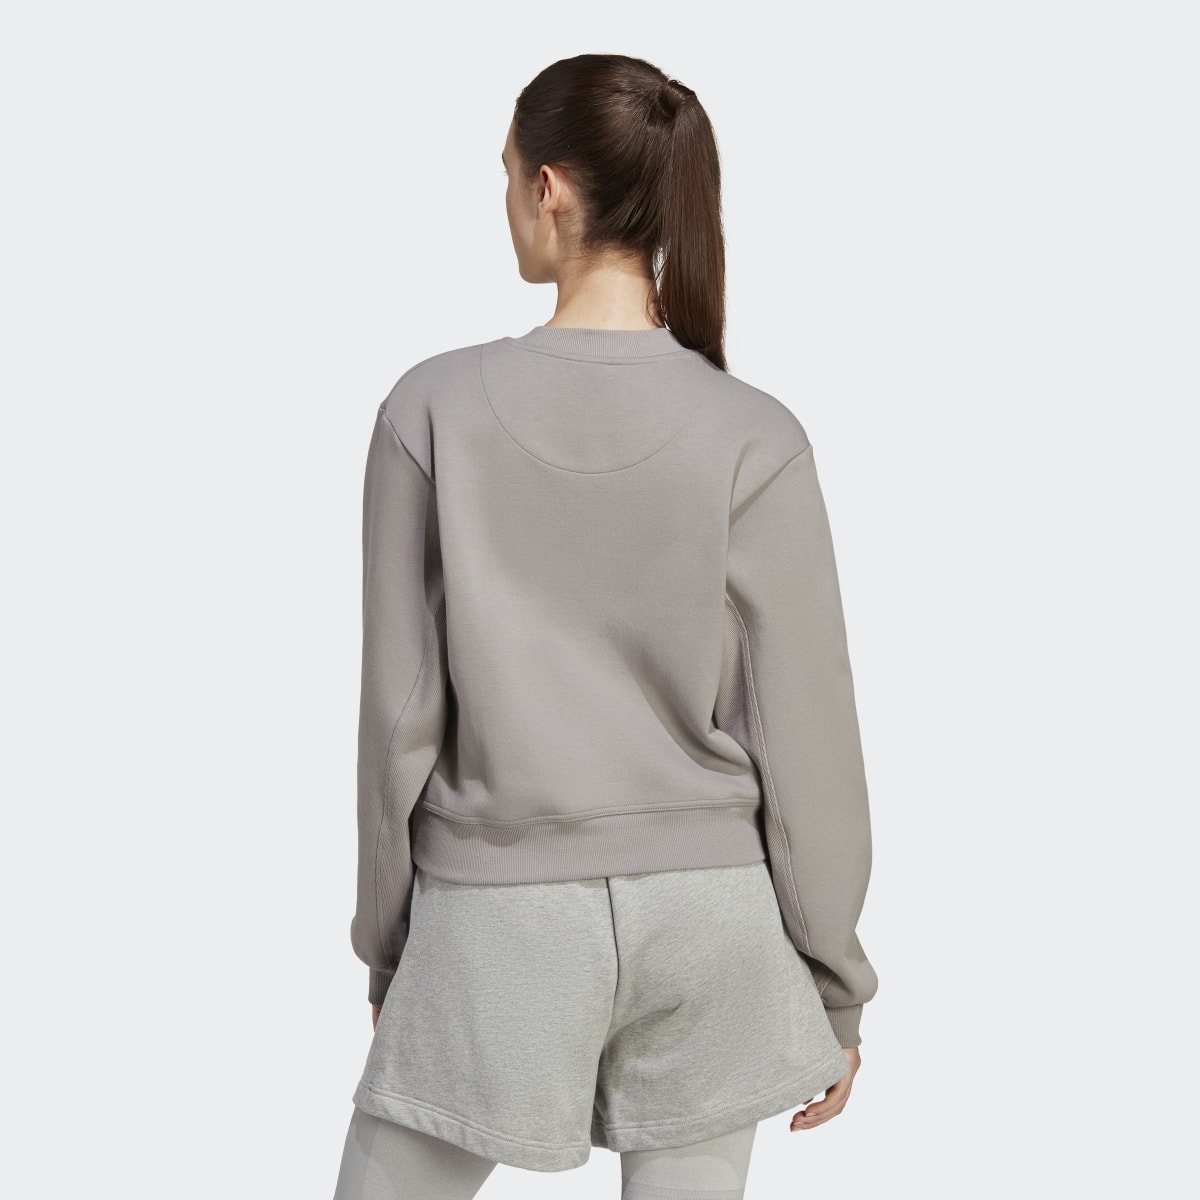 Adidas by Stella McCartney Sportswear Sweatshirt. 3